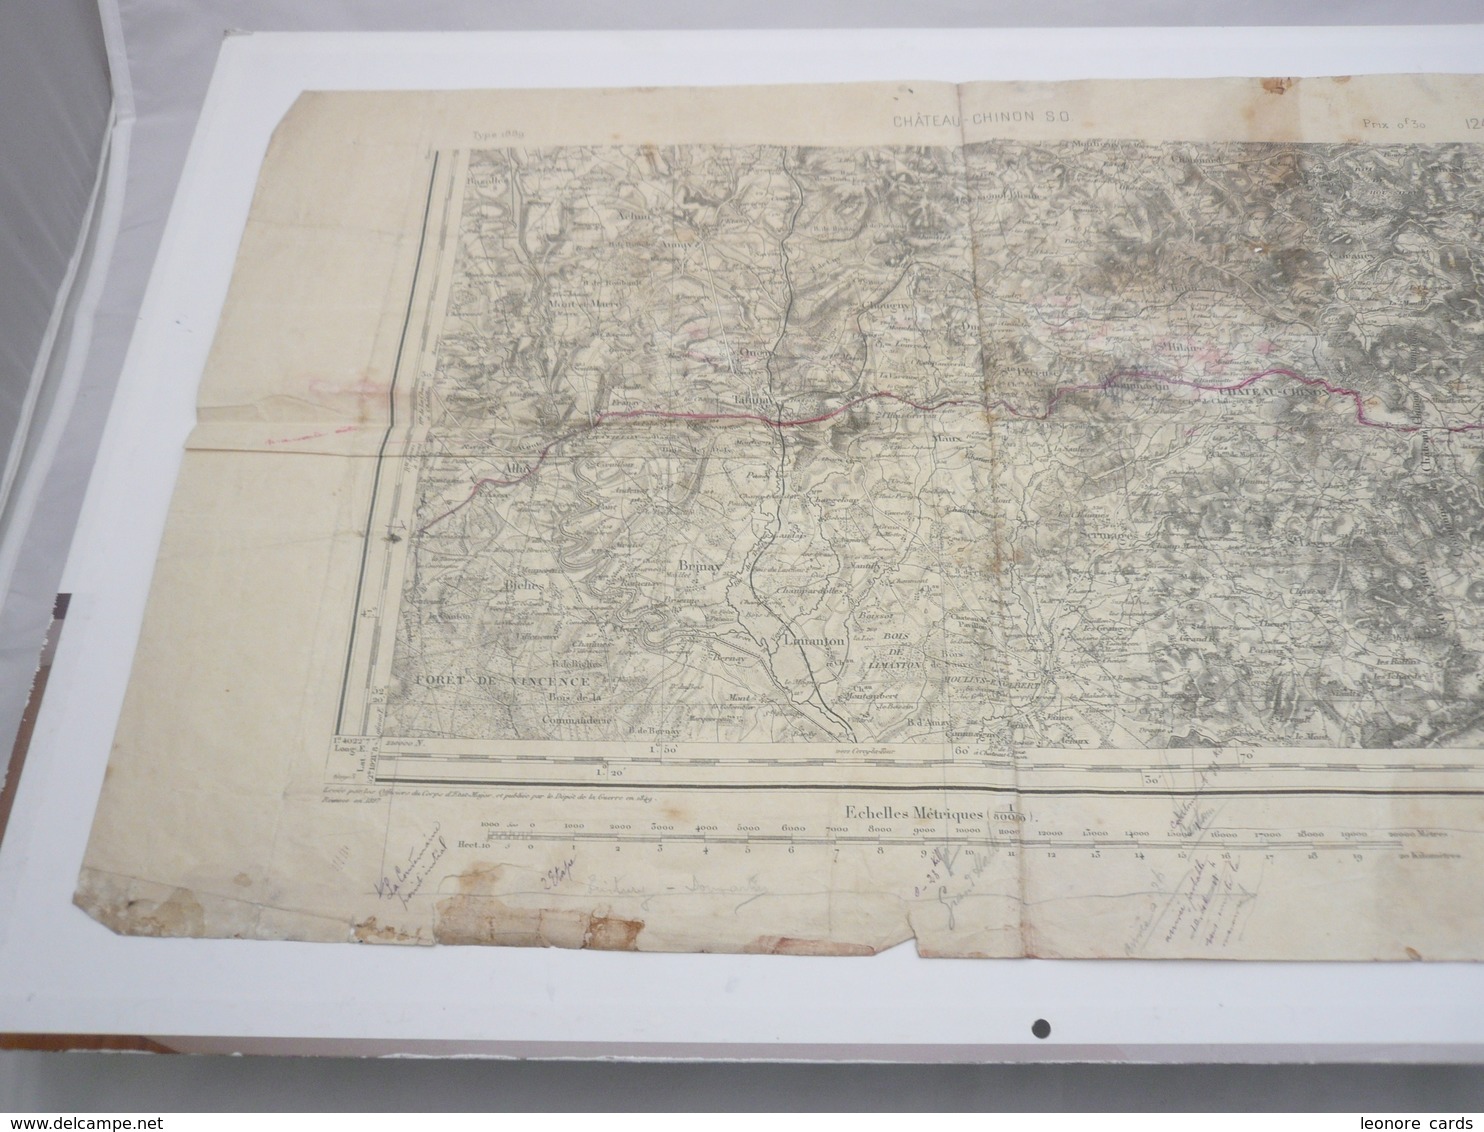 Vieux Papiers.Carte Géographique.Chateau-Chinon S.O.Type 1889.54 X 34 Cm - Cartes Géographiques